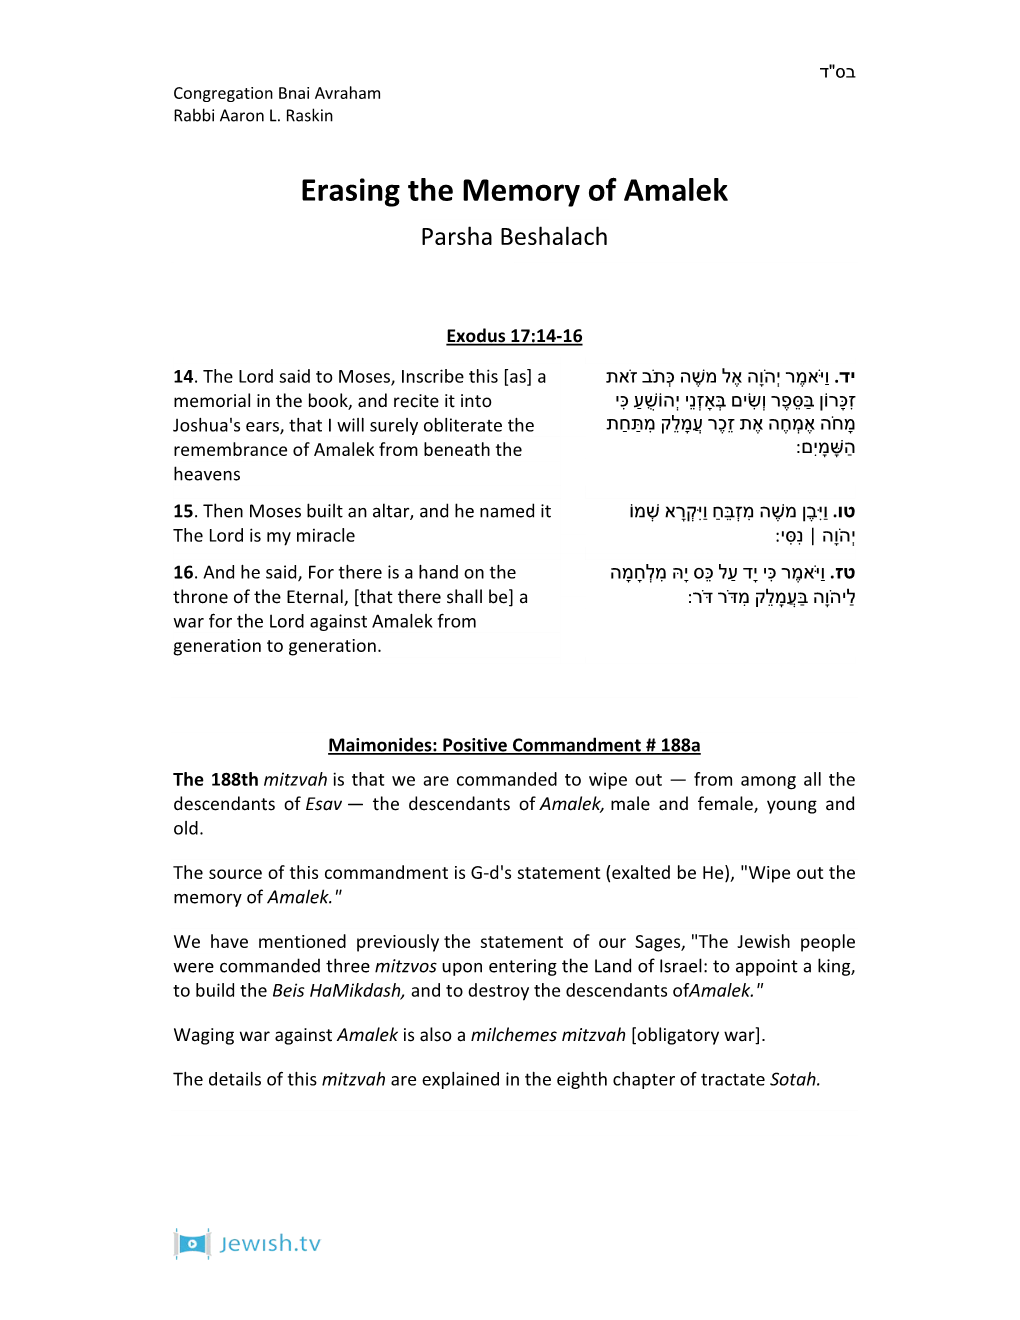 Erasing the Memory of Amalek Parsha Beshalach